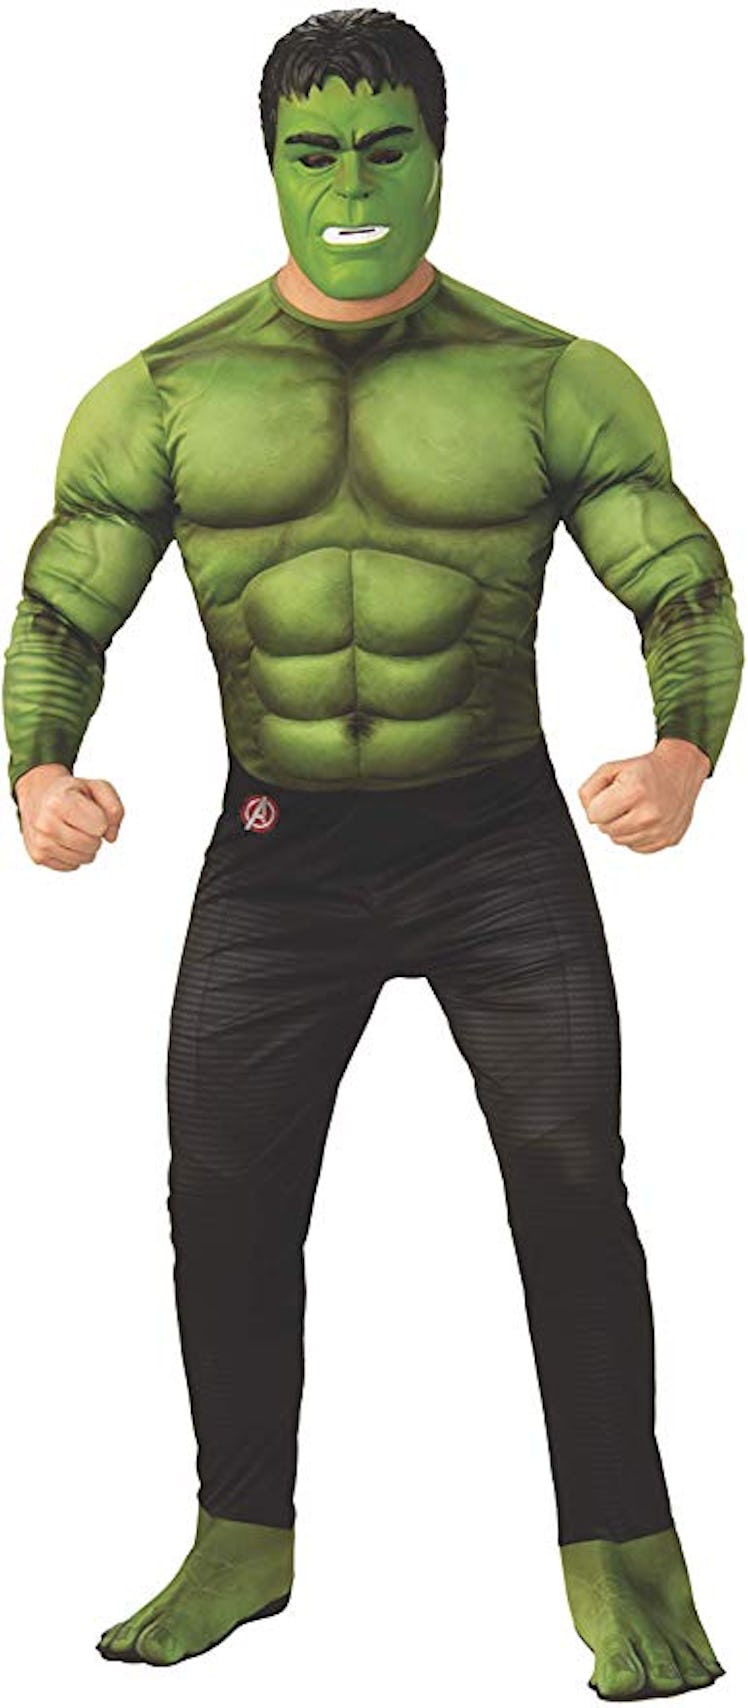 Rubie's Marvel Avengers: Endgame Deluxe Hulk Adult Costume